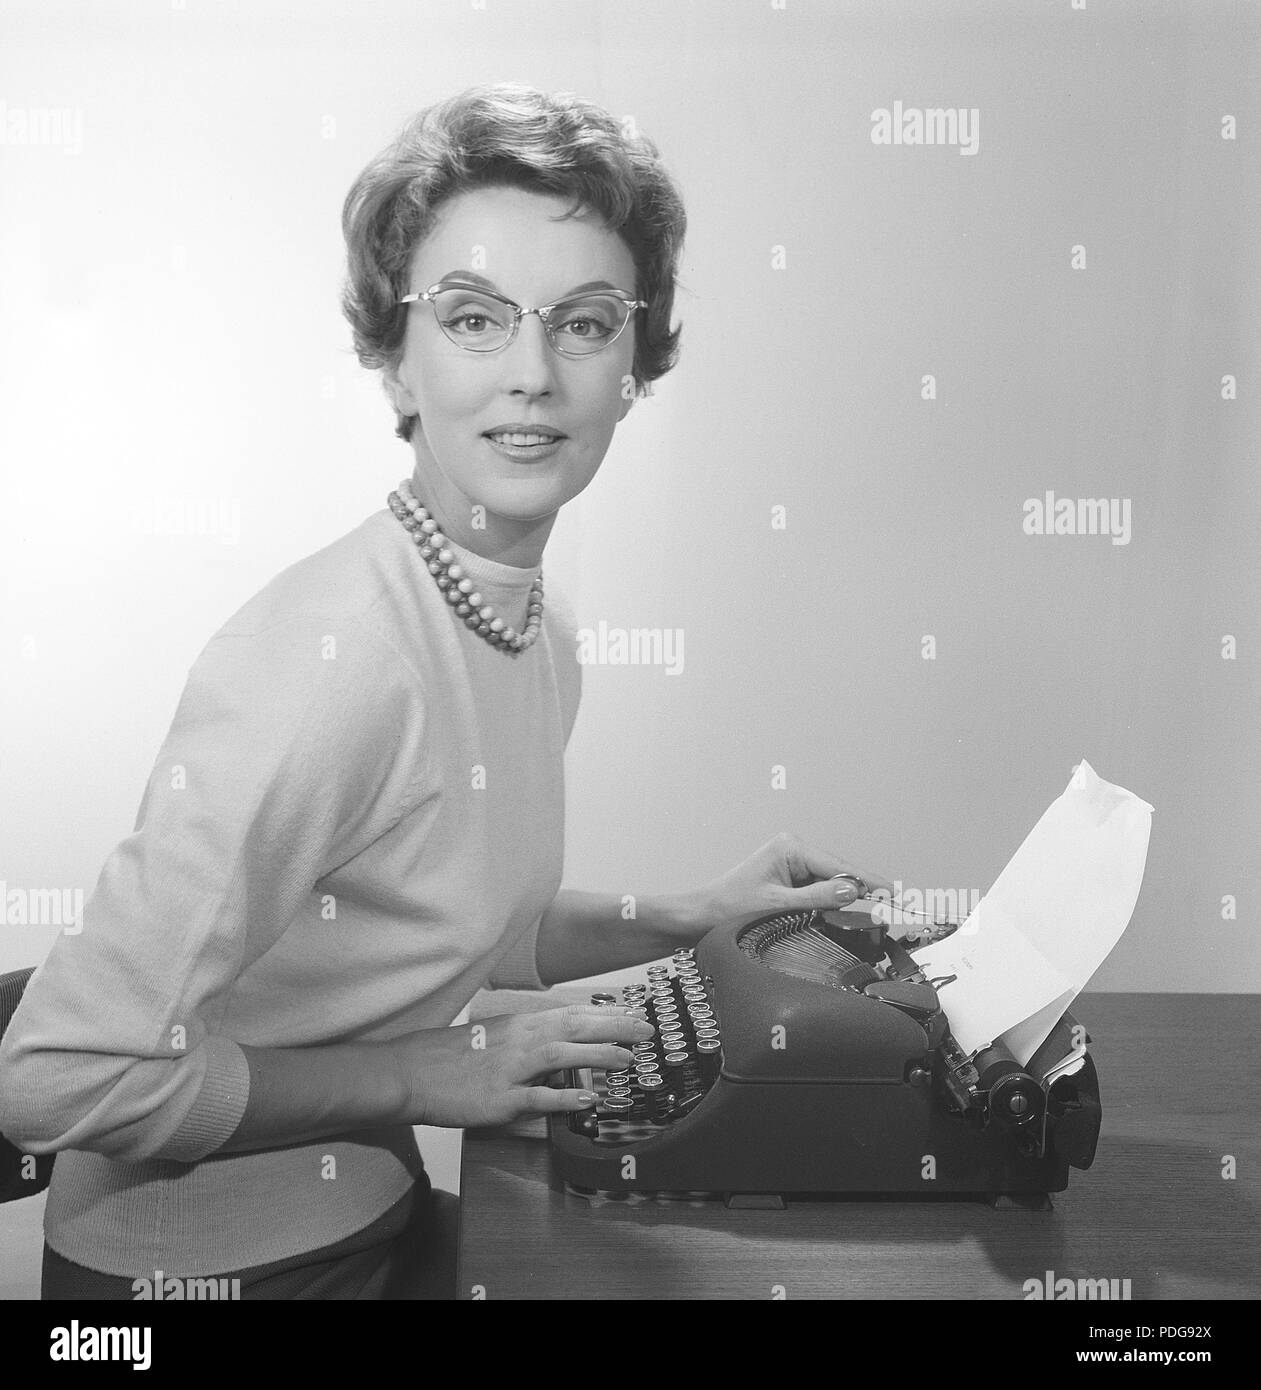 Büromädchen in den 1950er. Ein junges Mädchen an der Schreibmaschine trägt eine typische 50-Brille und einen Pullover. 1958. Foto Kristoffersson/CB96-10 Stockfoto